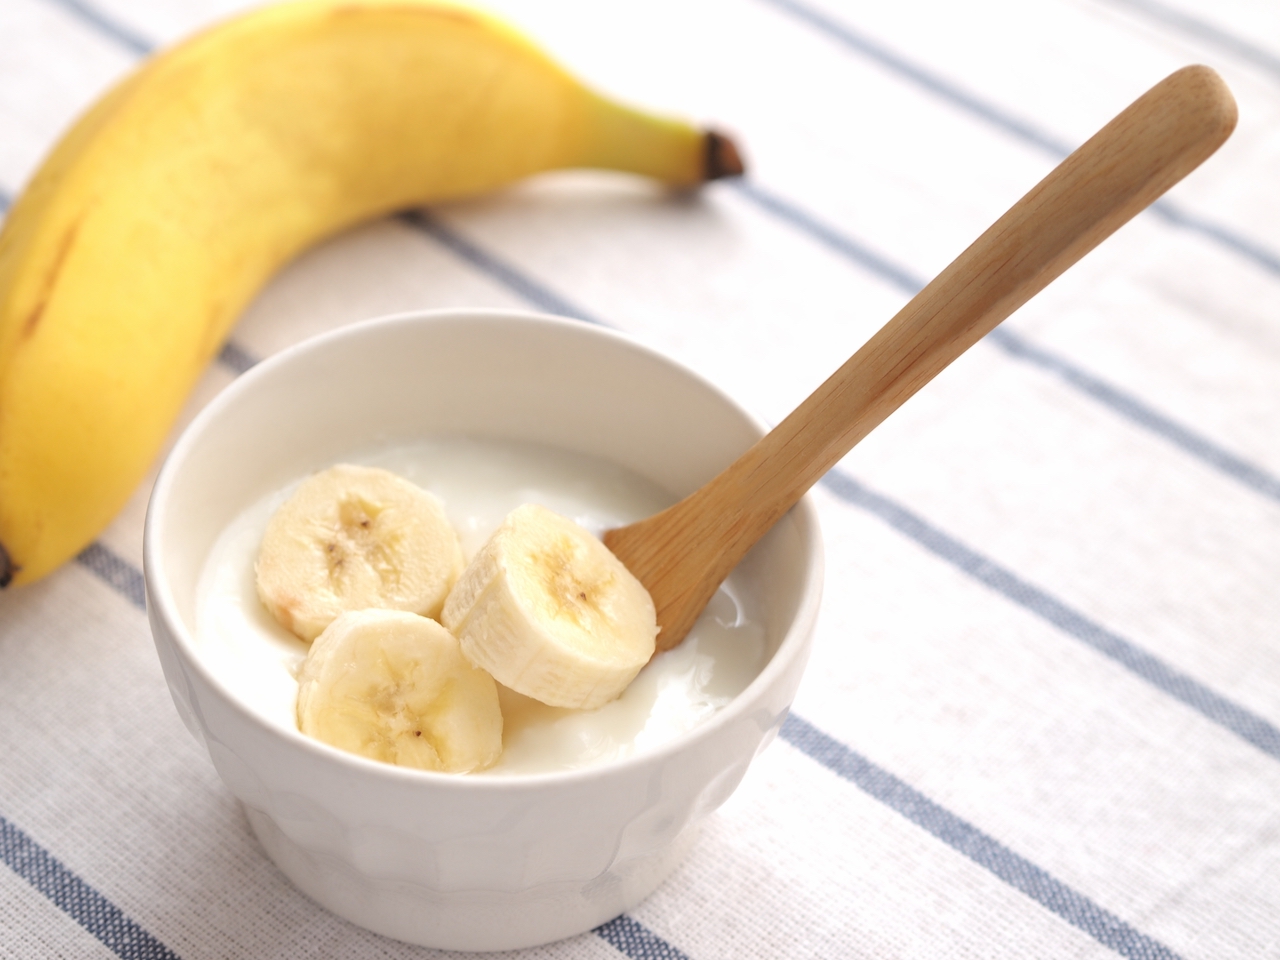 バナナはカロリーと糖質が高いから太る ダイエット中はng 専門家に聞いてみた 健康 スポーツ Melos